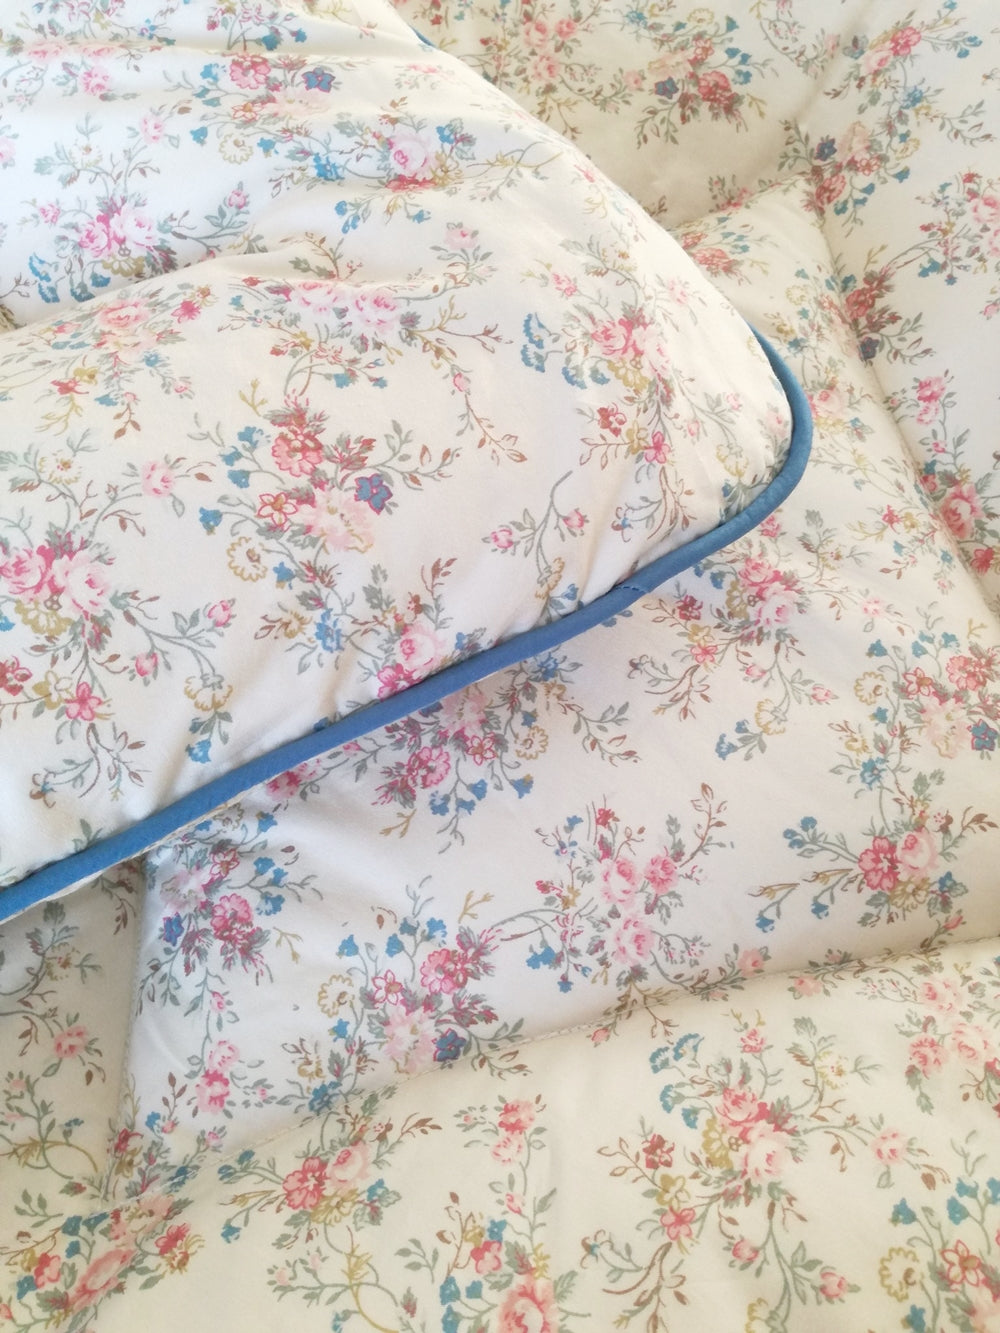 Prettiest Vintage Inspired Cream Floral Eiderdown Bedspread Quilt